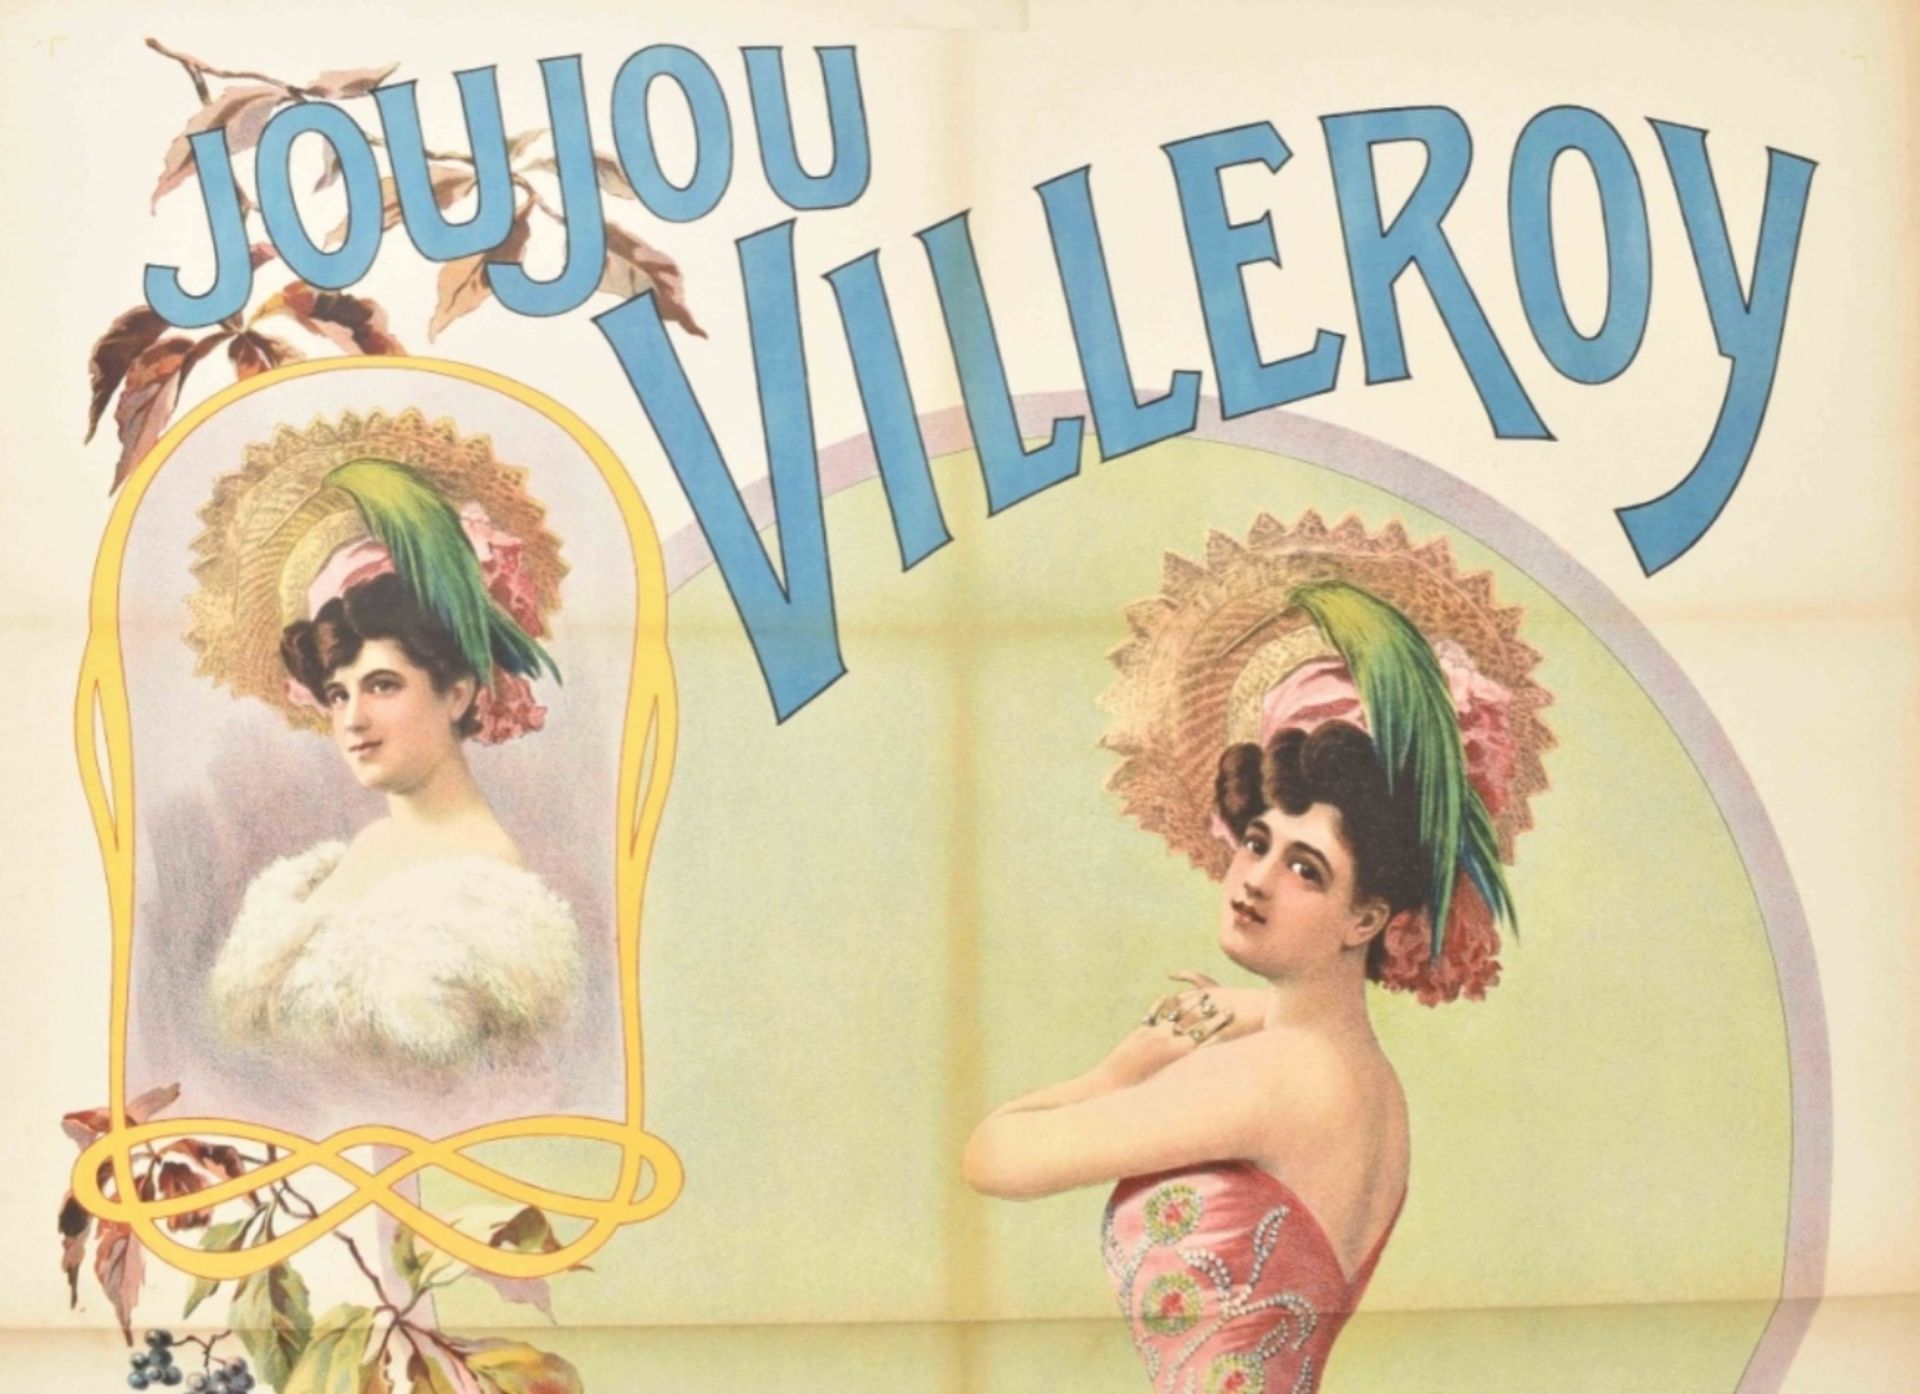 [Entertainment] Joujou Villeroy Excentrique Francaise, danse à transformation. Friedländer, 1907 - Bild 4 aus 5